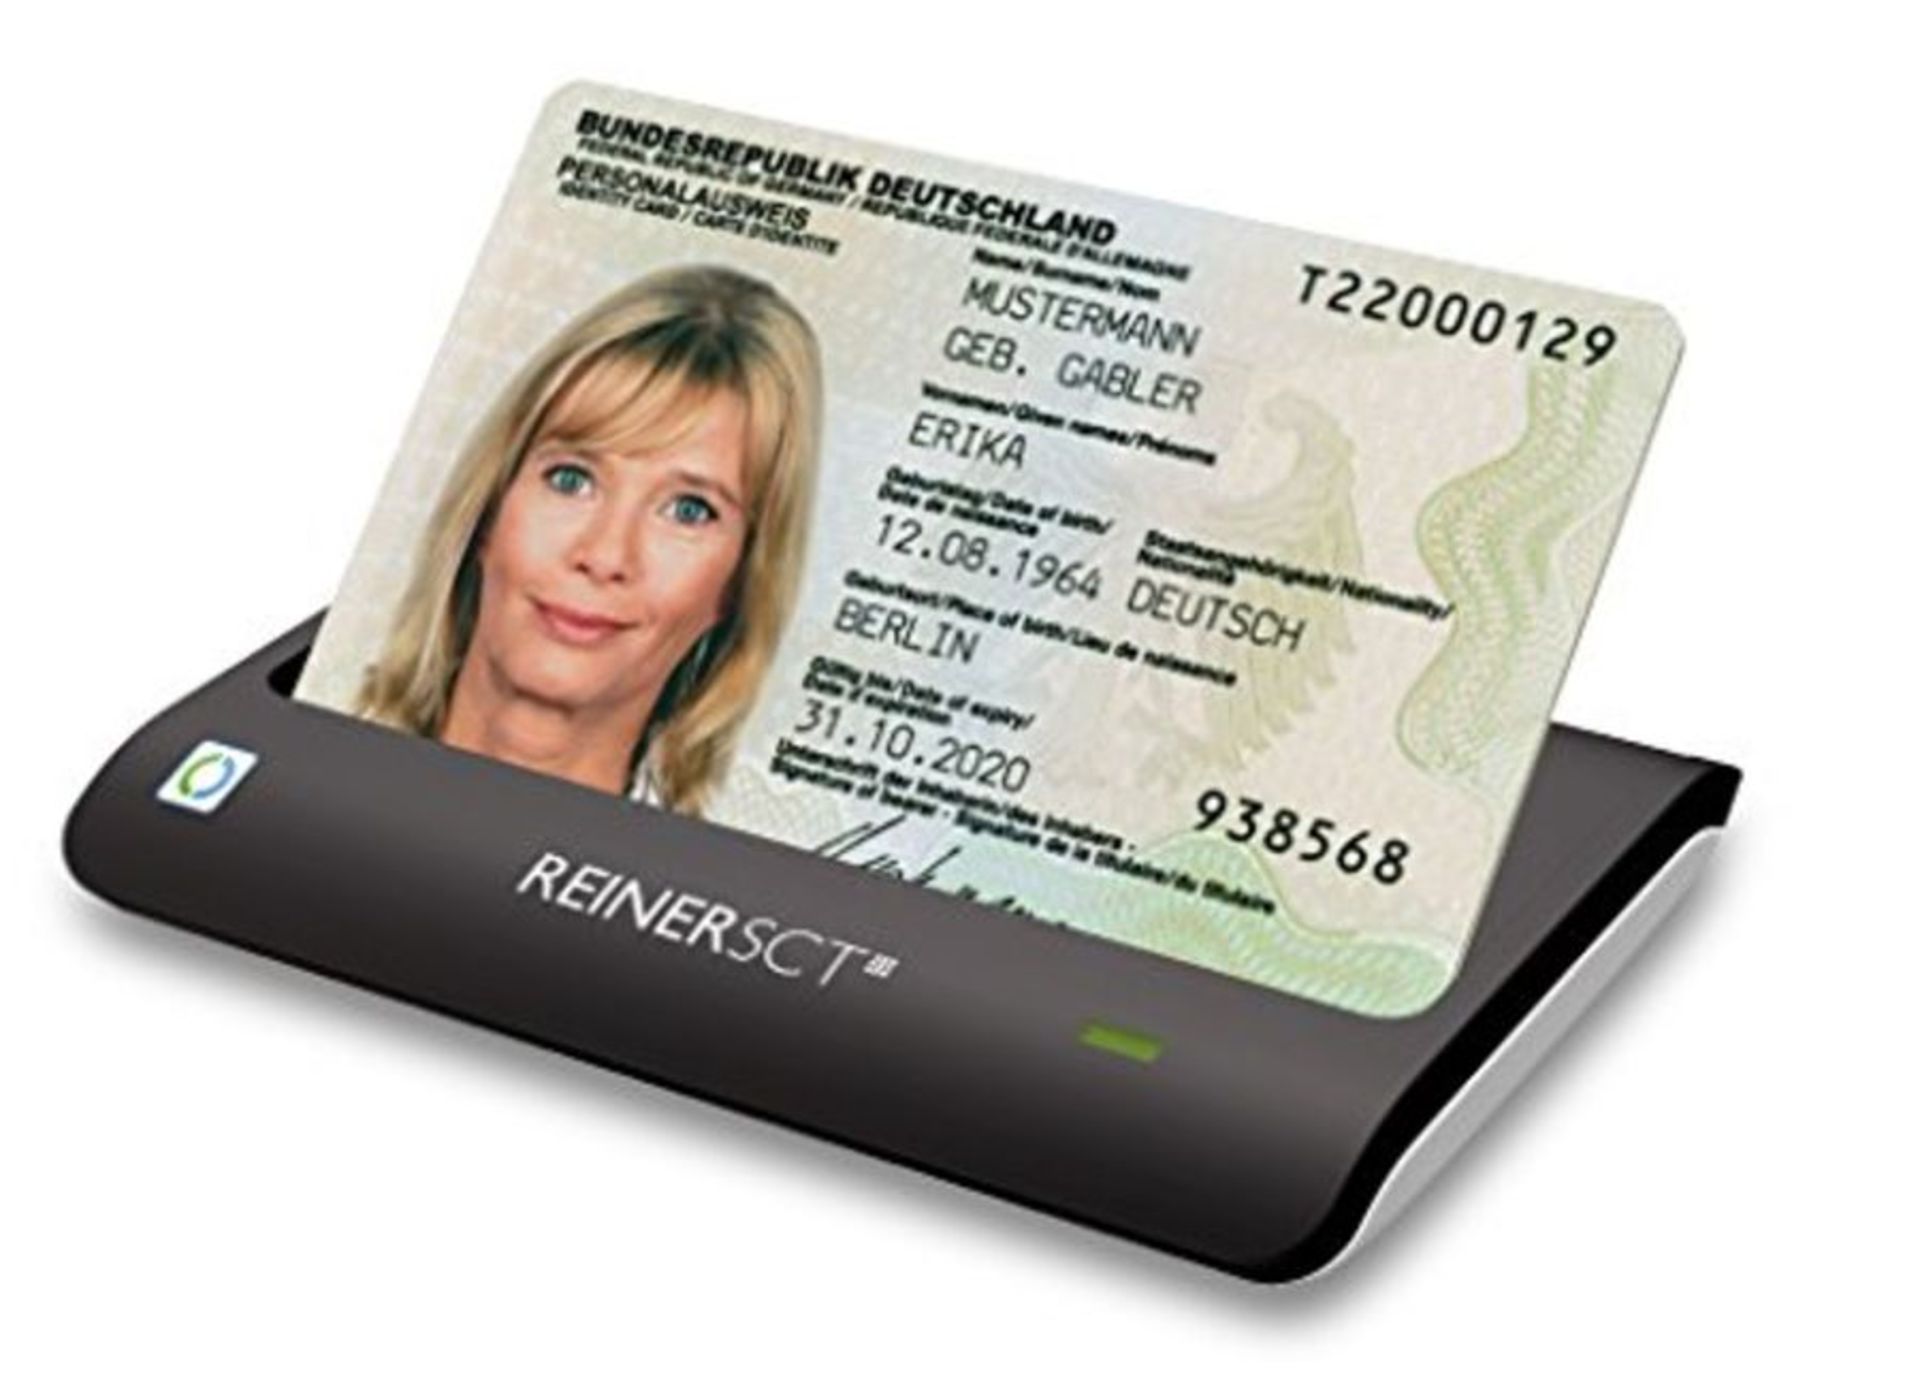 Reiner SCT cyberJack RFID Basis nPA Smart Card Reader eID BSI-Certified with loginCard